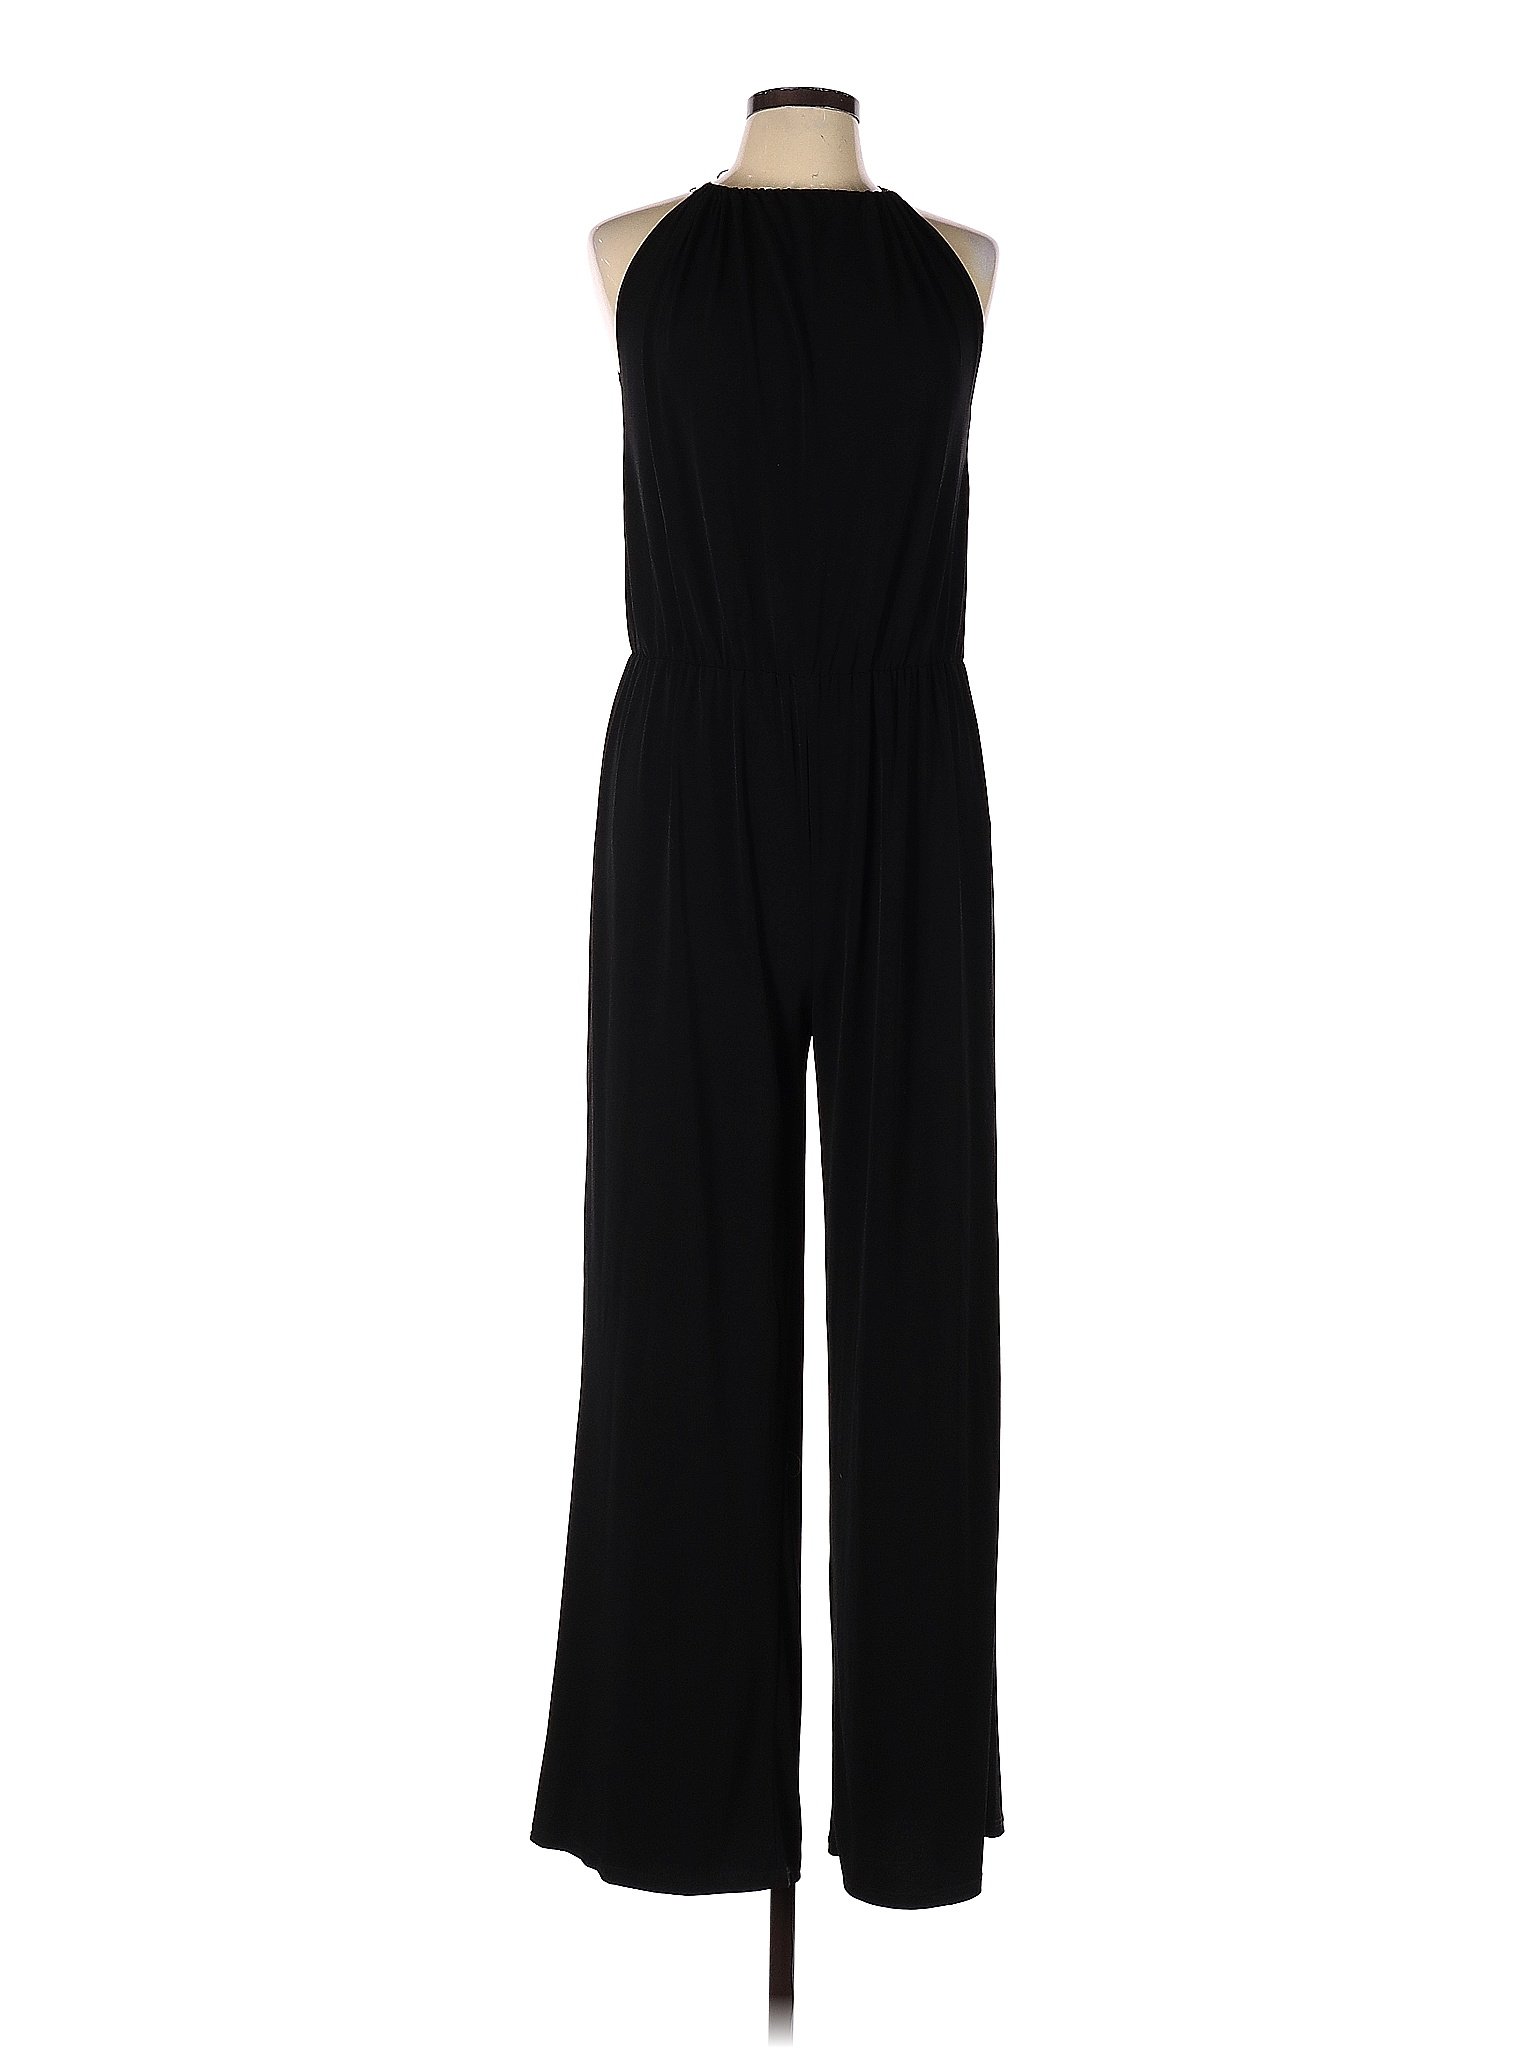 Tiana B. Solid Black Jumpsuit Size L - 64% off | thredUP